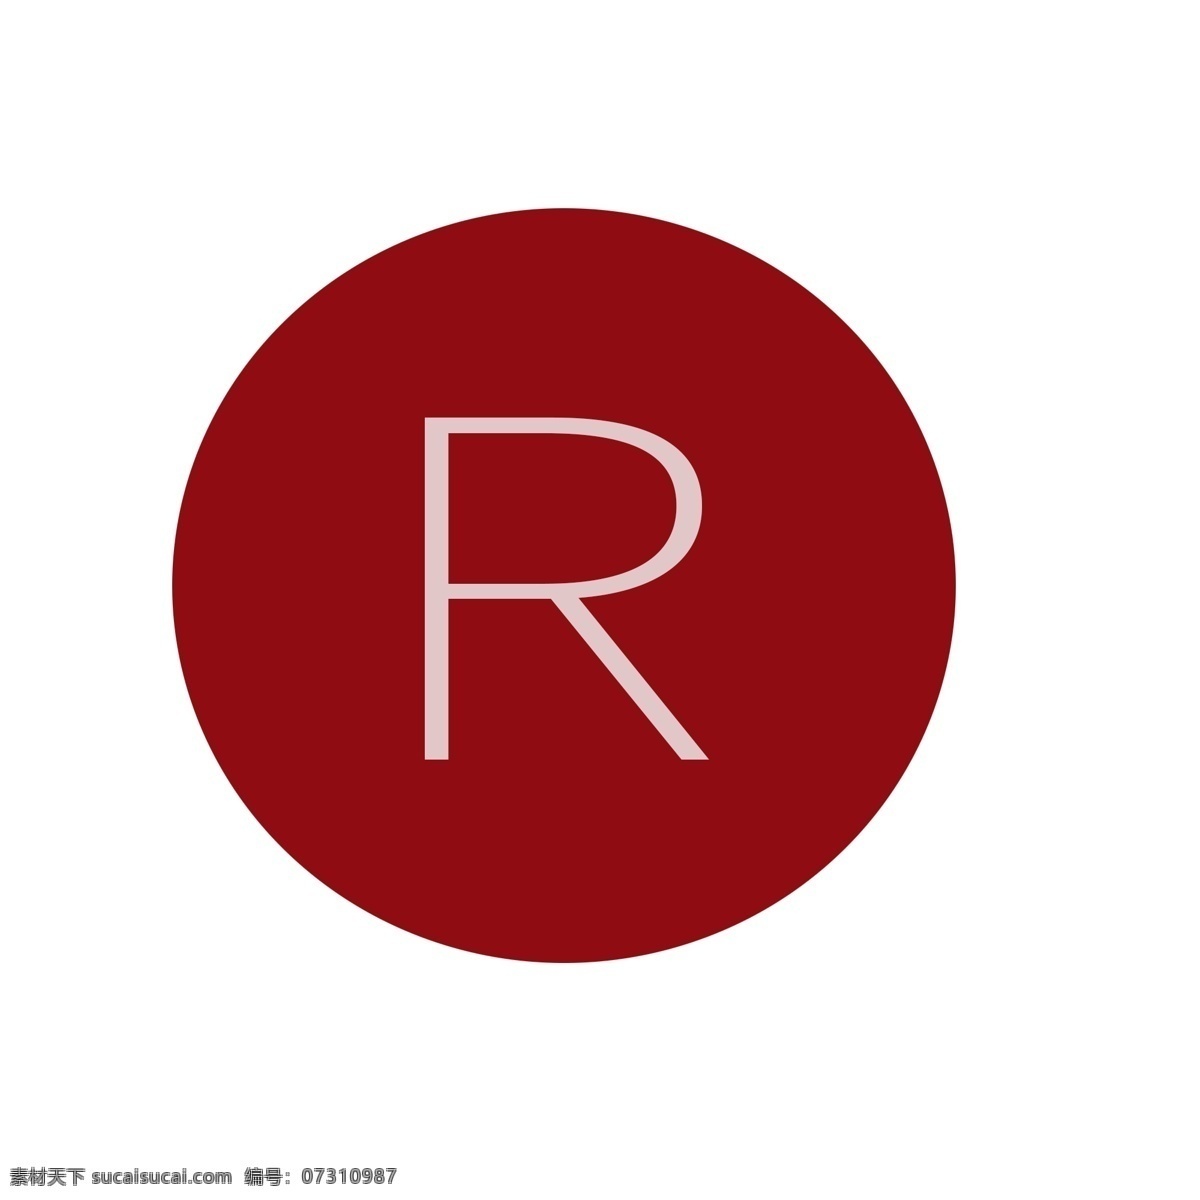 专利产品标记 专利标志 红色标记 专利产品 商标专利